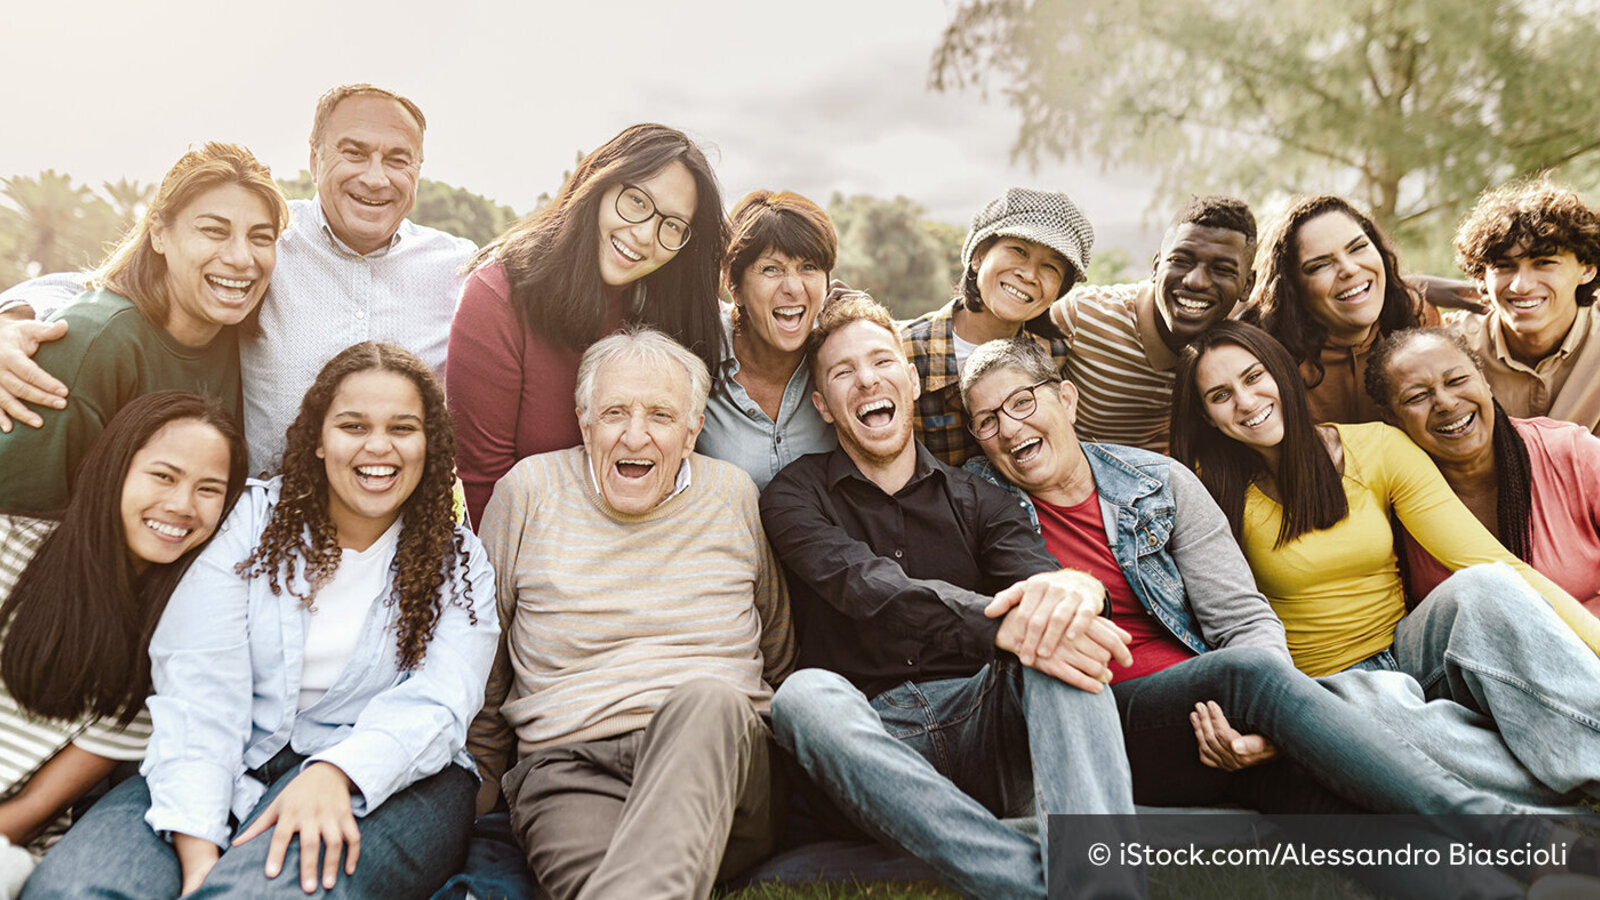 14 Menschen unterschiedlichen Alters und unterschiedlicher Herkunft posieren lachend für ein Gruppenfoto.